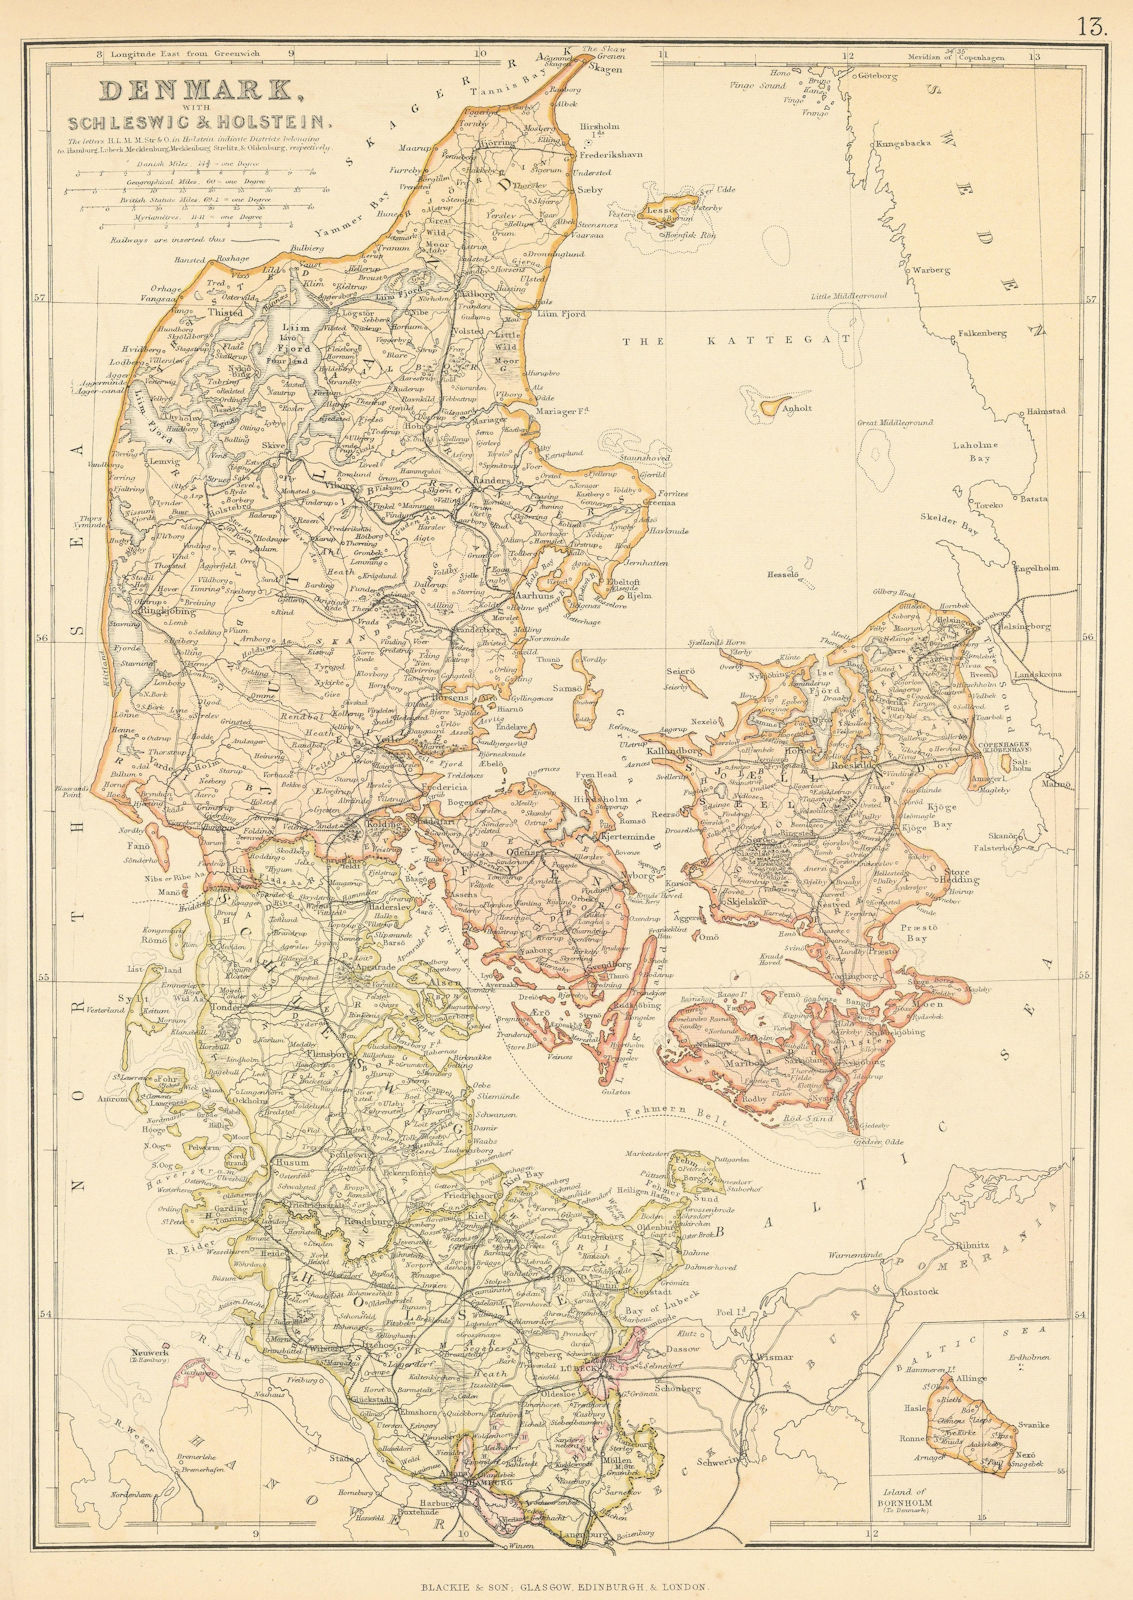 DENMARK SCHLESWIG & HOLSTEIN. Railways. Scale in Danish miles. BLACKIE 1886 map